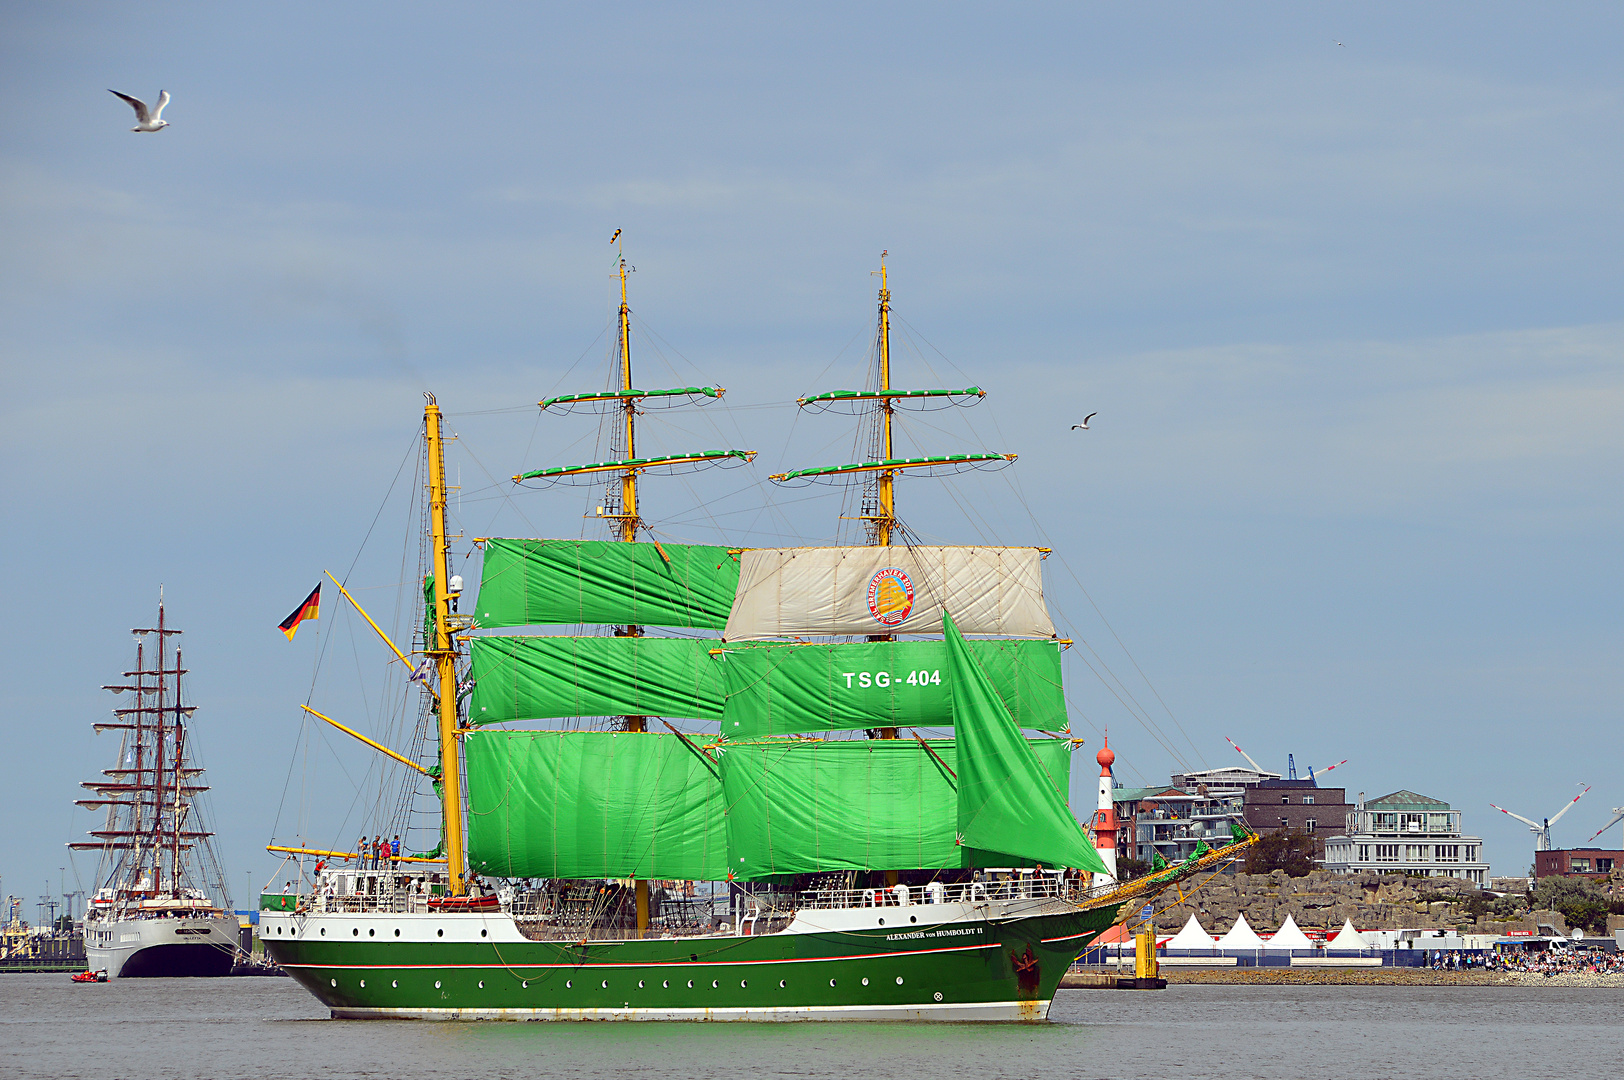 Alexander von Humbold II Einlaufparade zur Sail 2015 in Bremerhaven